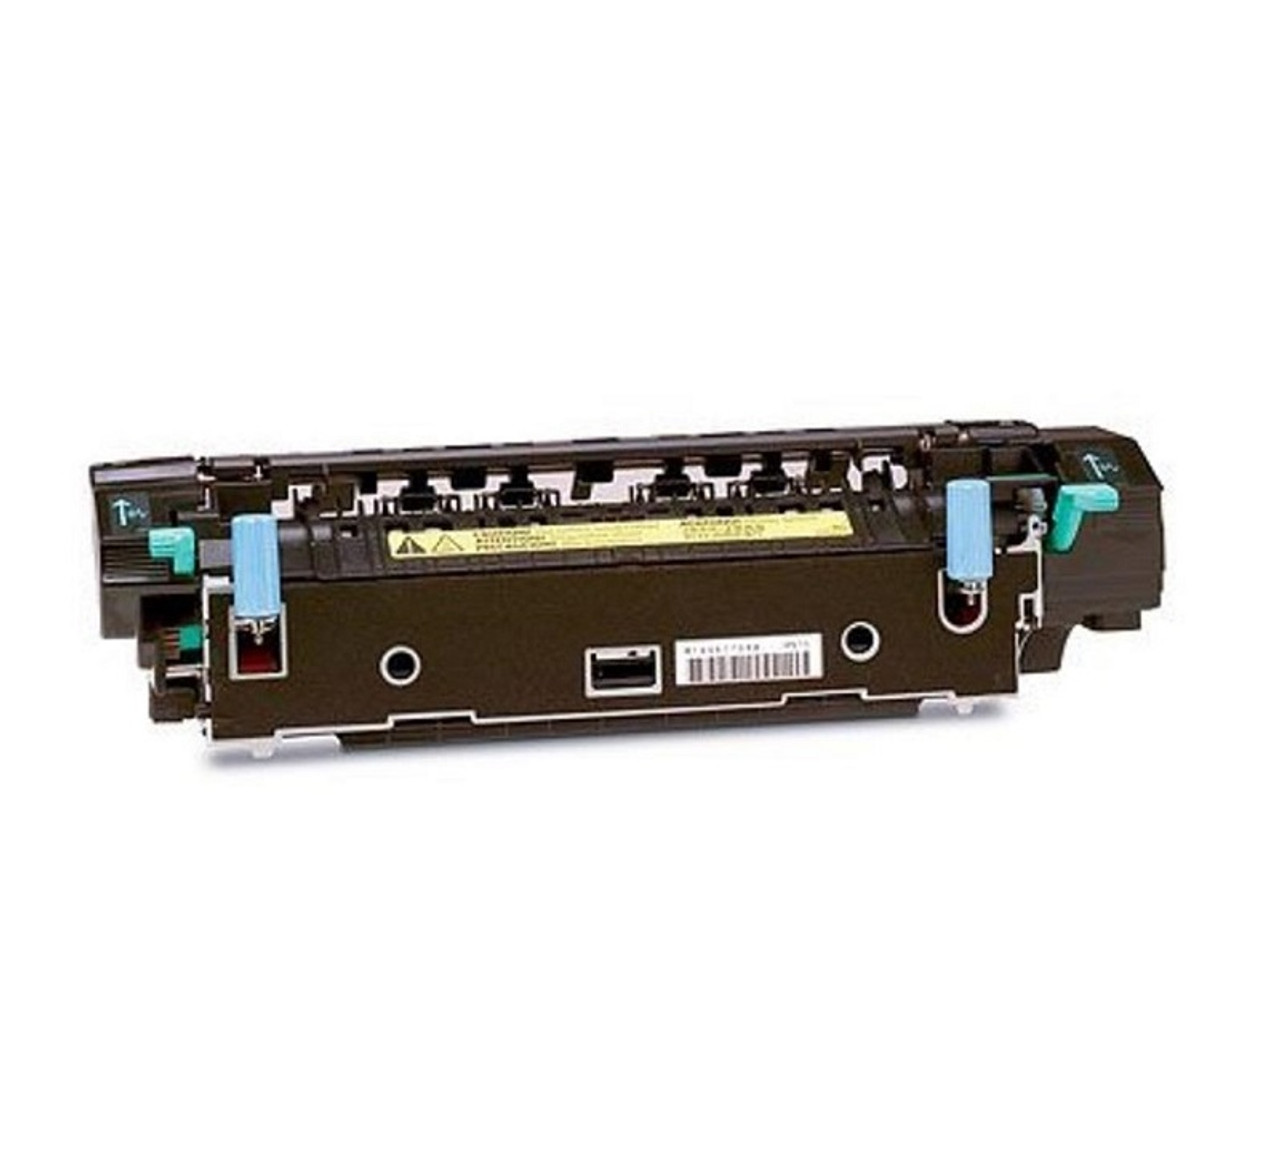 RM1-0560-000 -HP Fuser Assembly (110V) for LaserJet 1150 / 1300 Series Printer